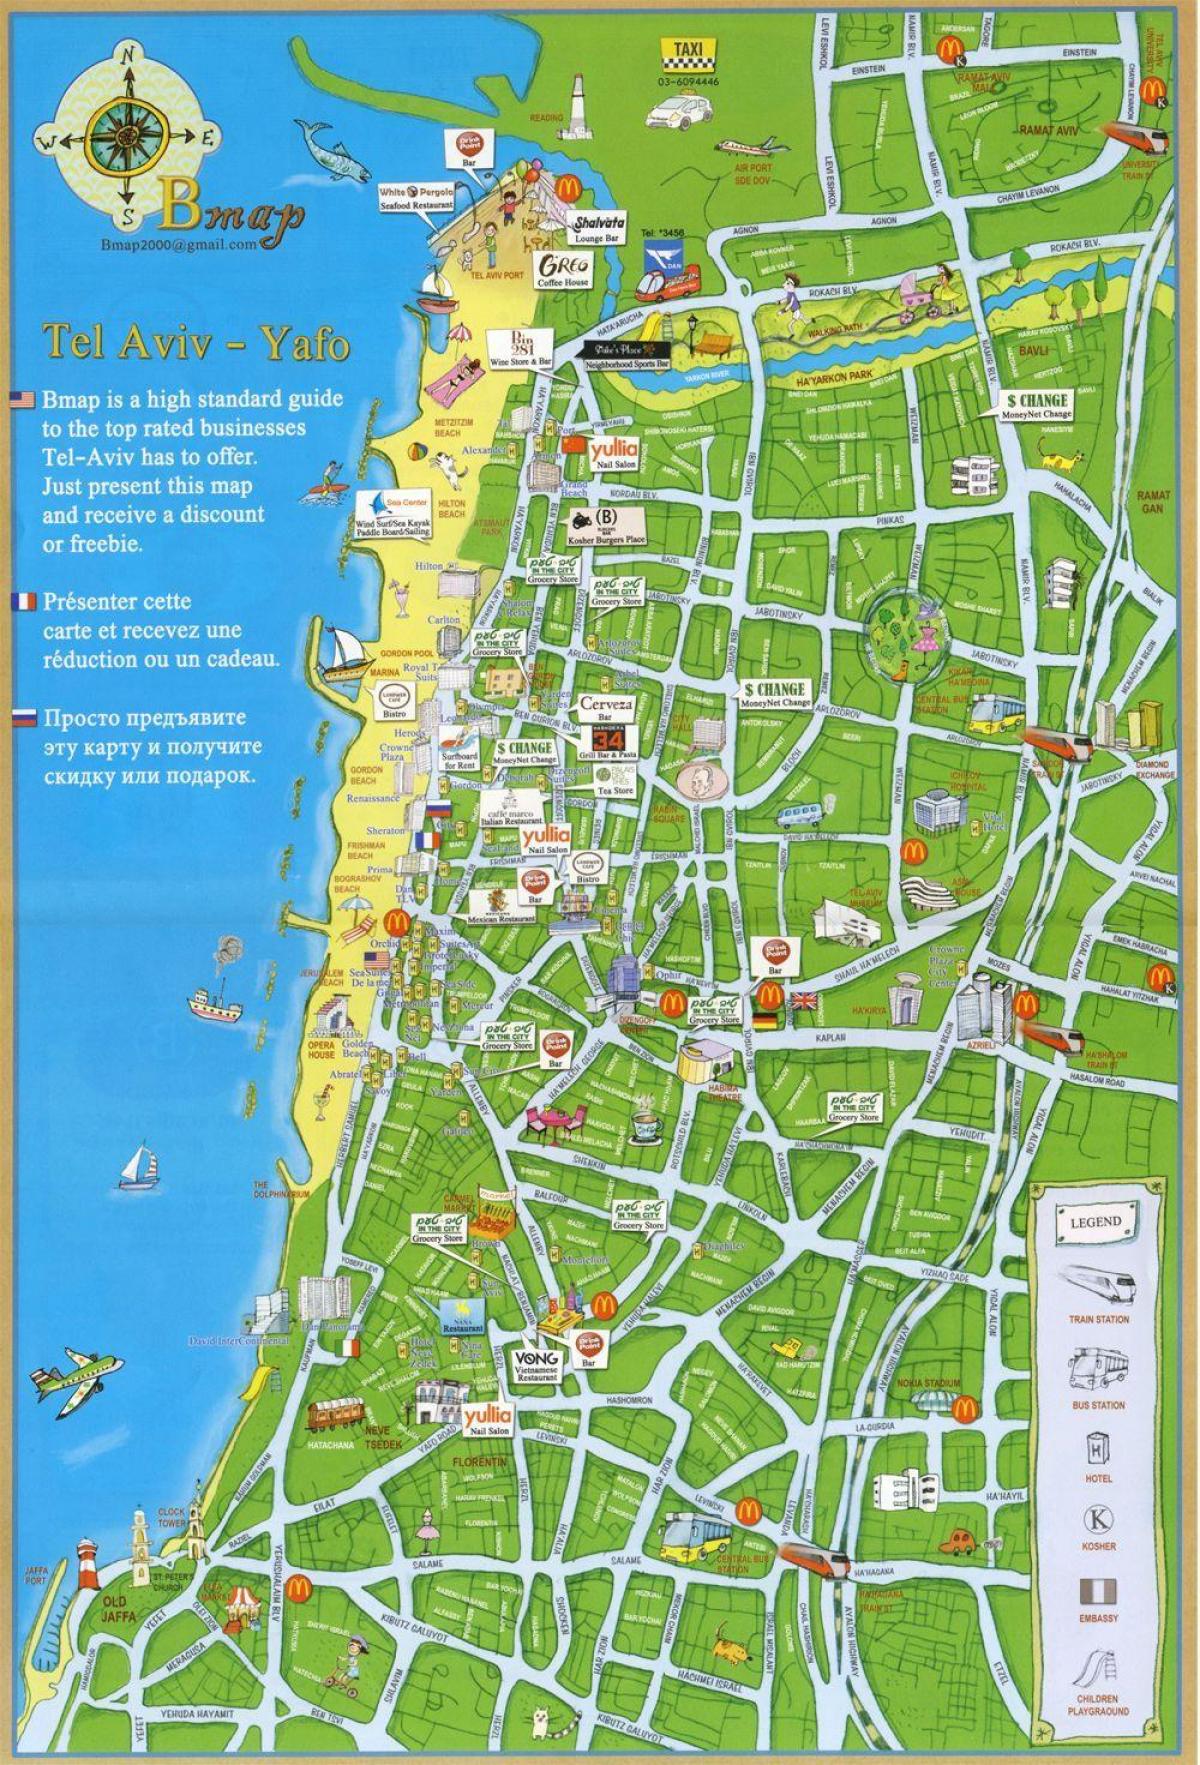 Tel Avivo lankytinų vietų žemėlapis